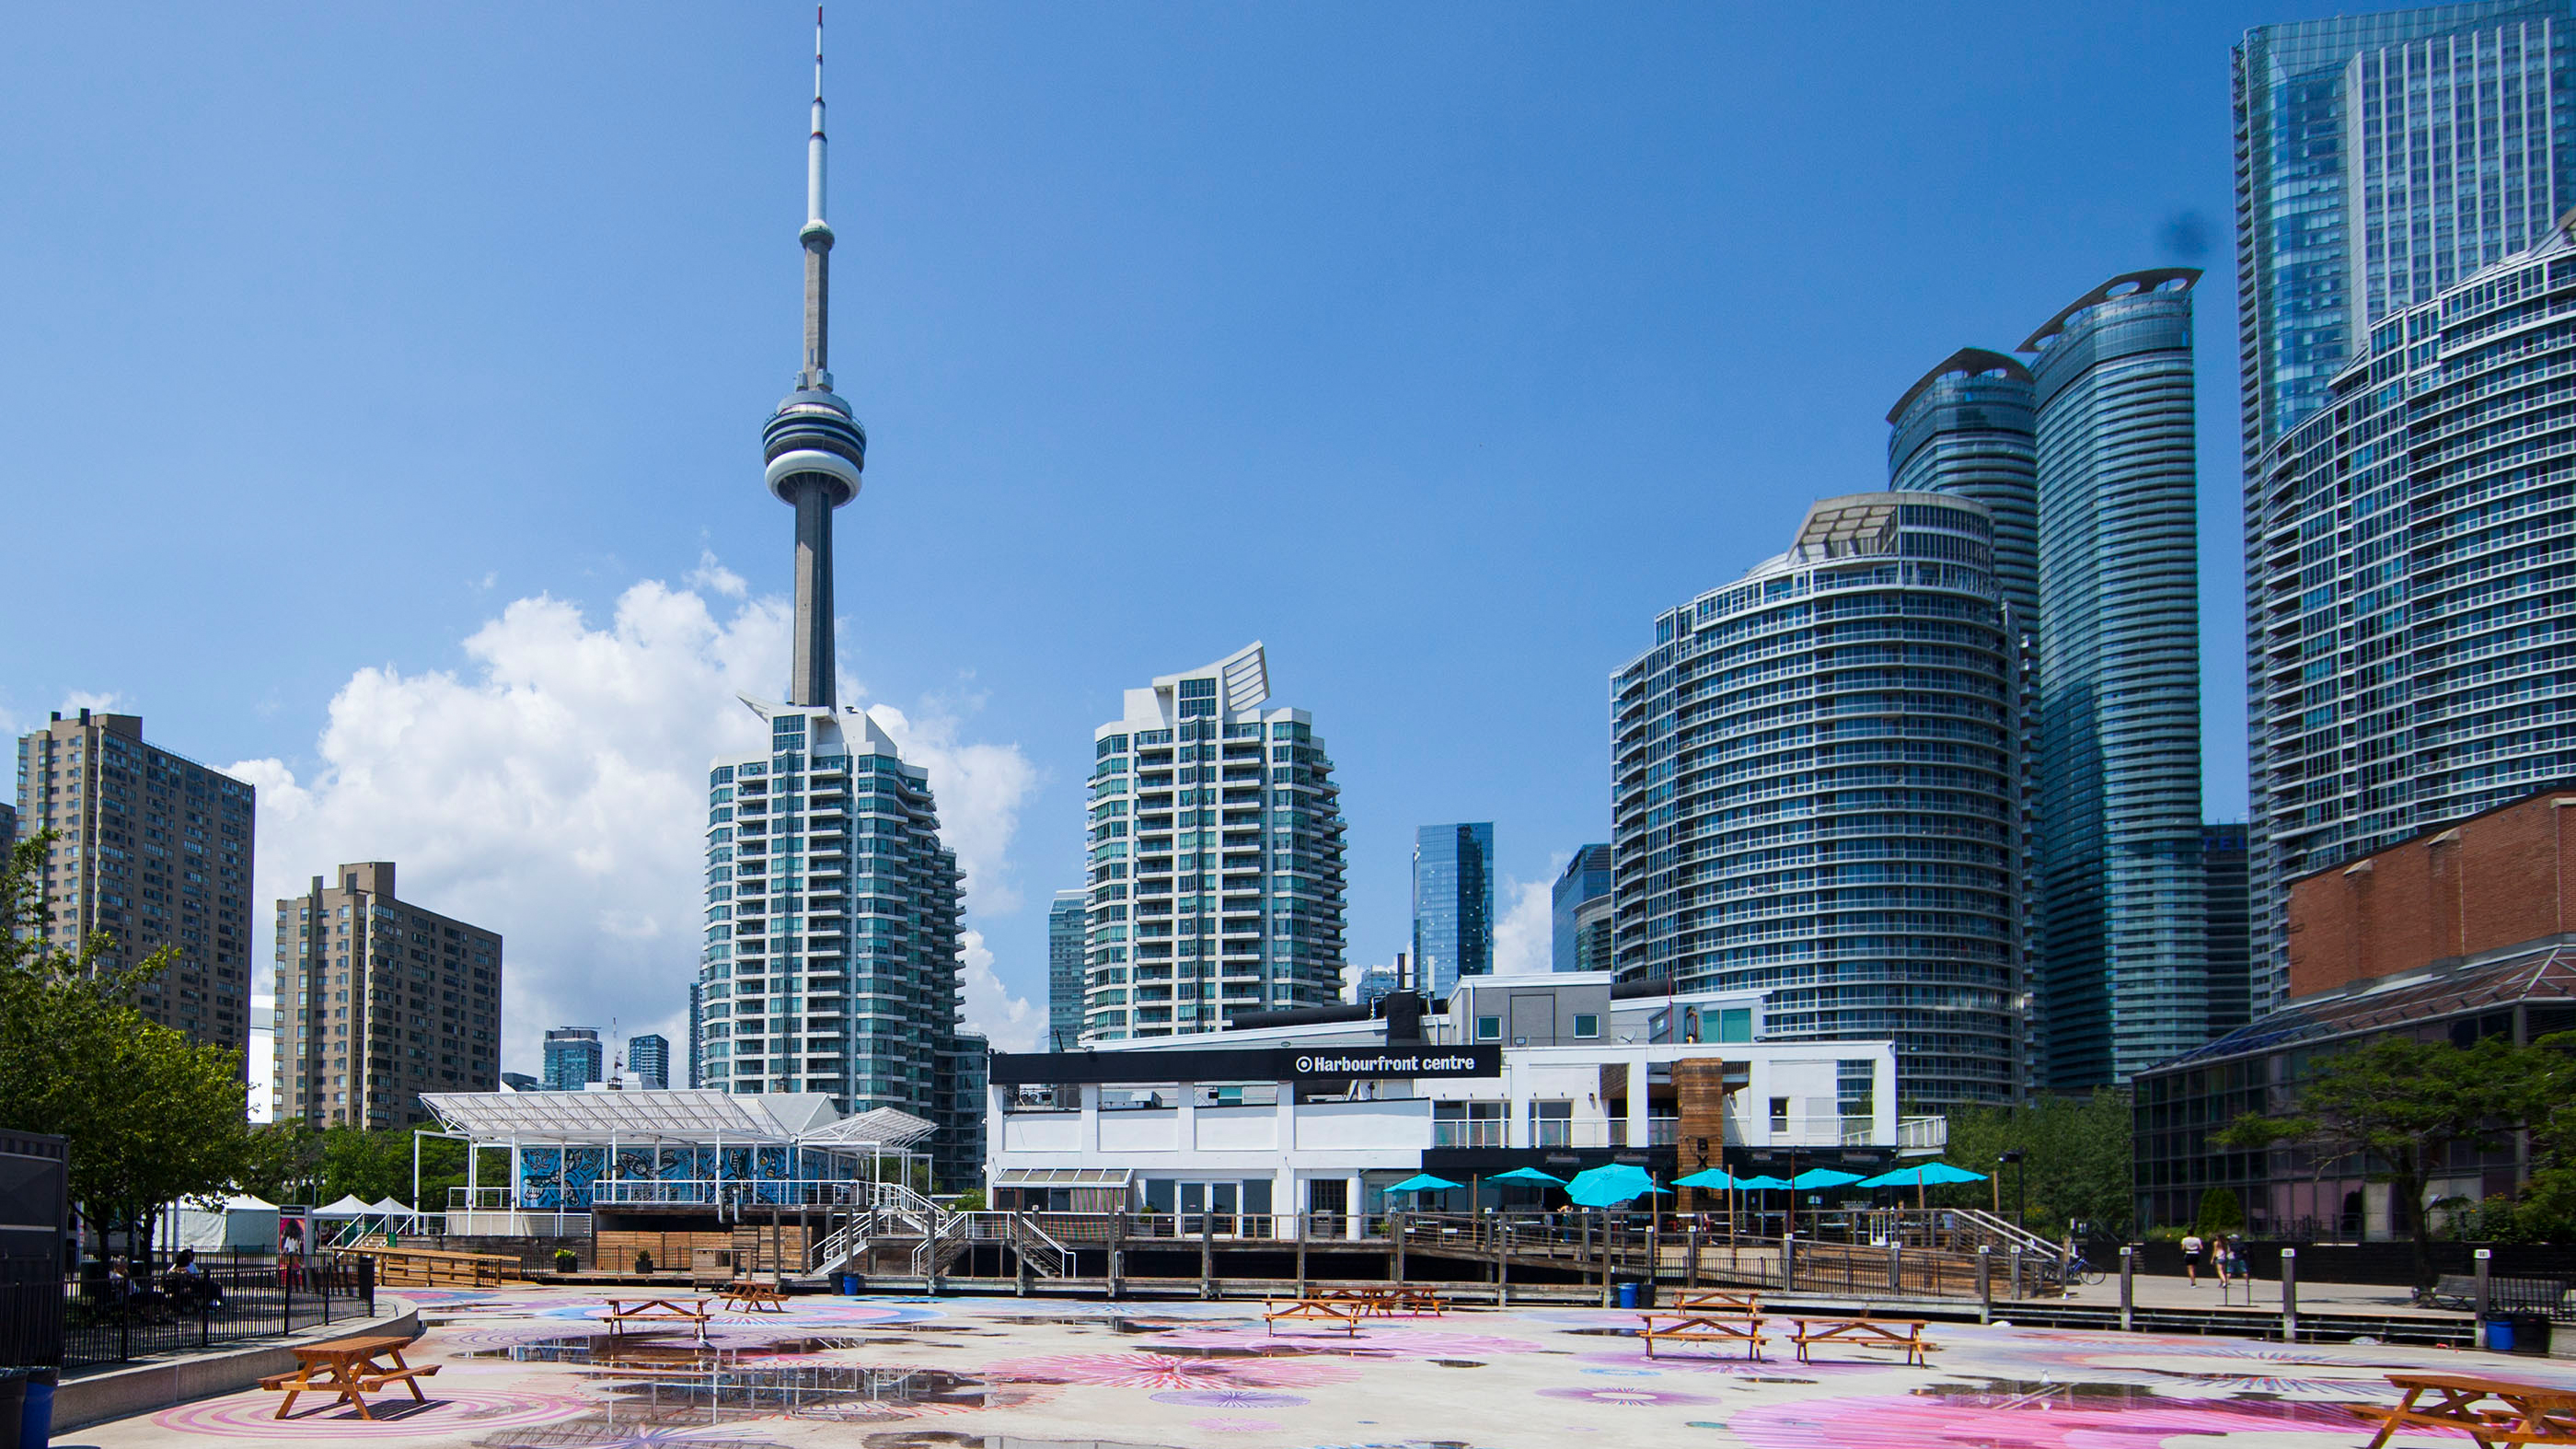 Hochhäuser vor blauem Himmel in Toronto | picture alliance/dpa/XinHua